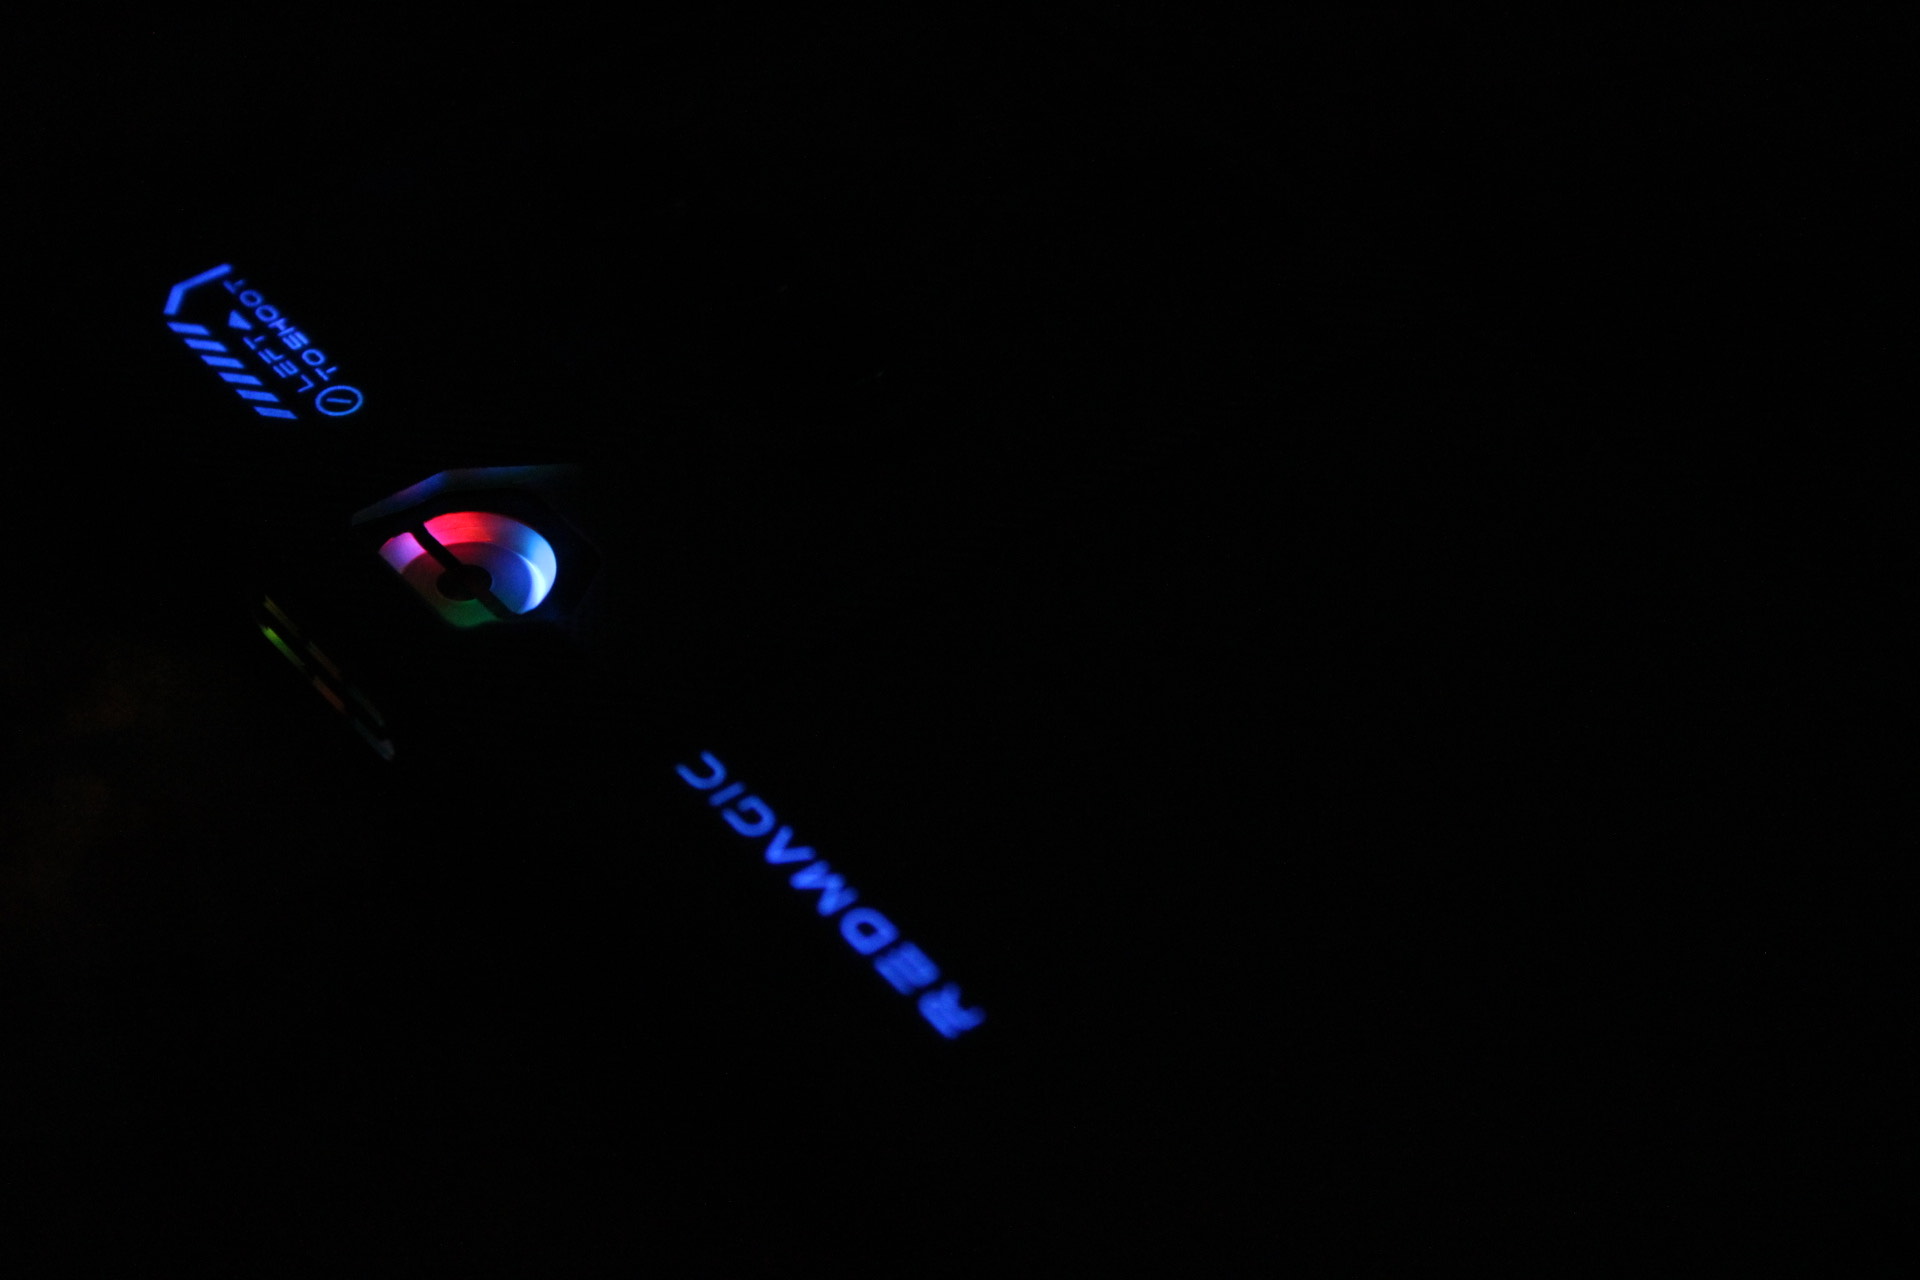 Ventilador RedMagic 8 Pro brilhando no escuro.